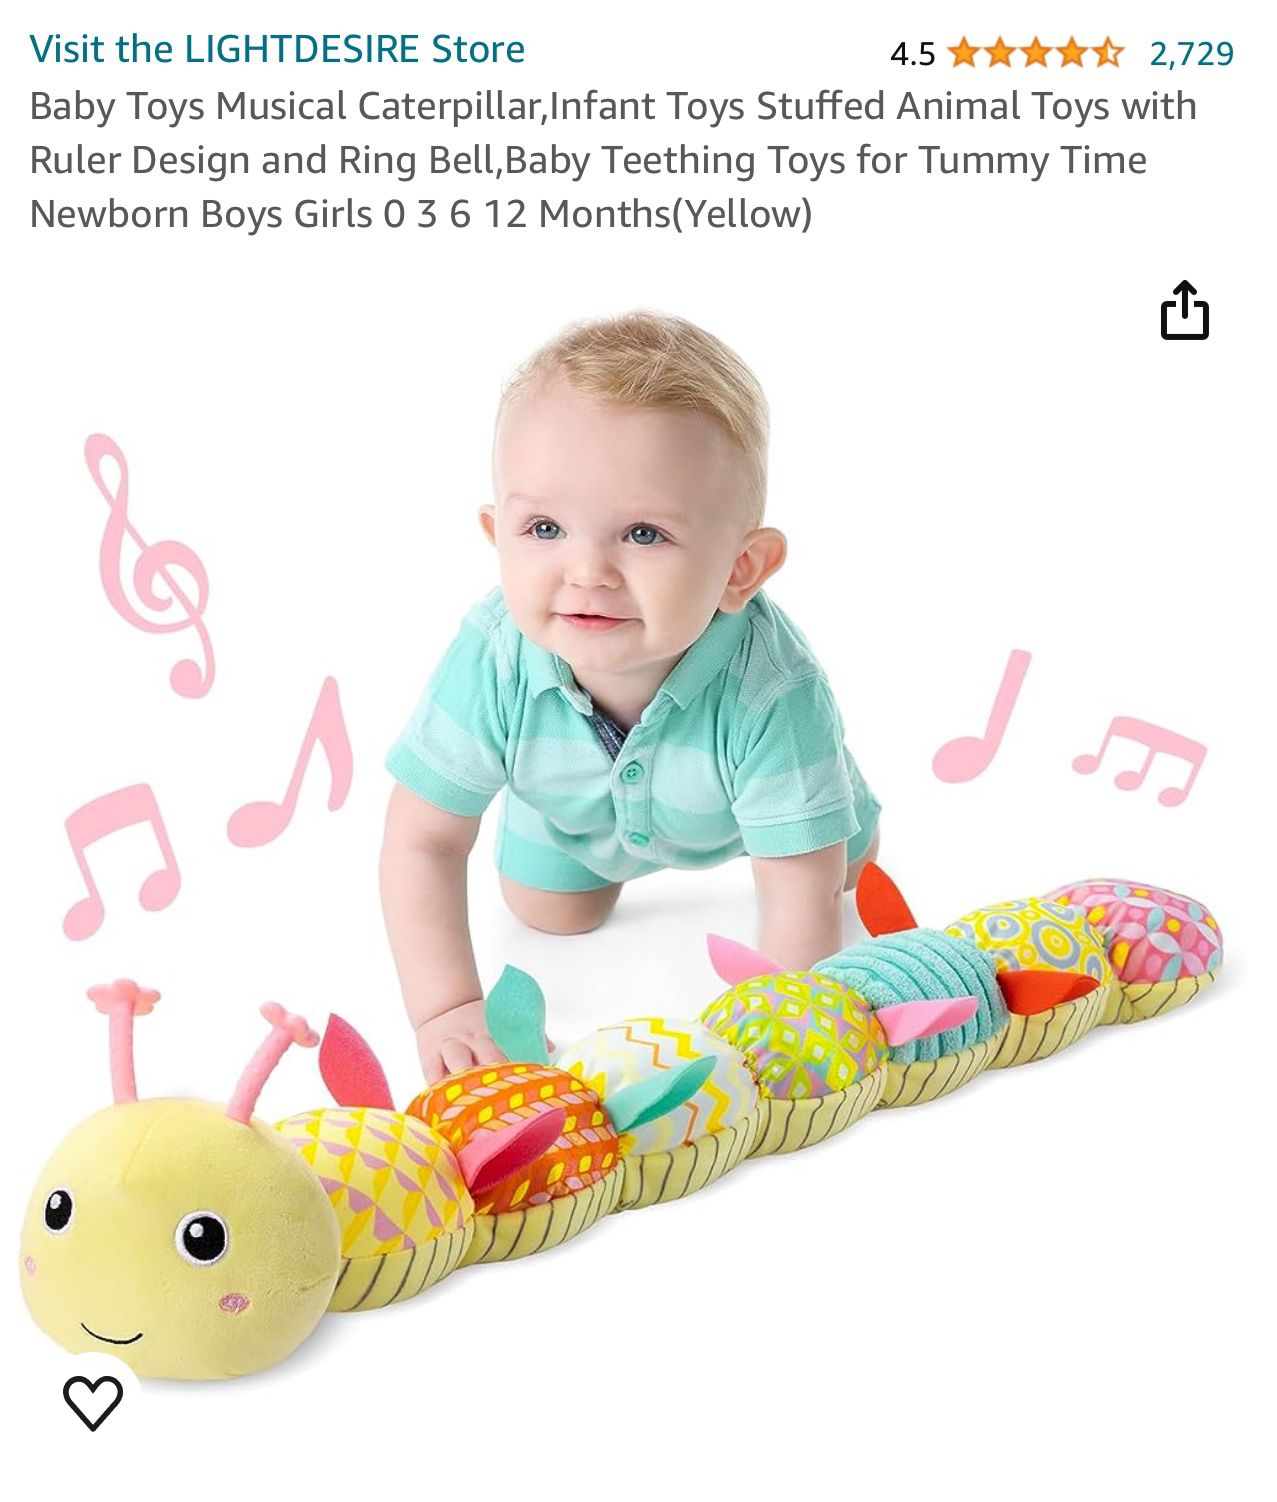 Baby Toys Musical Carterpillar